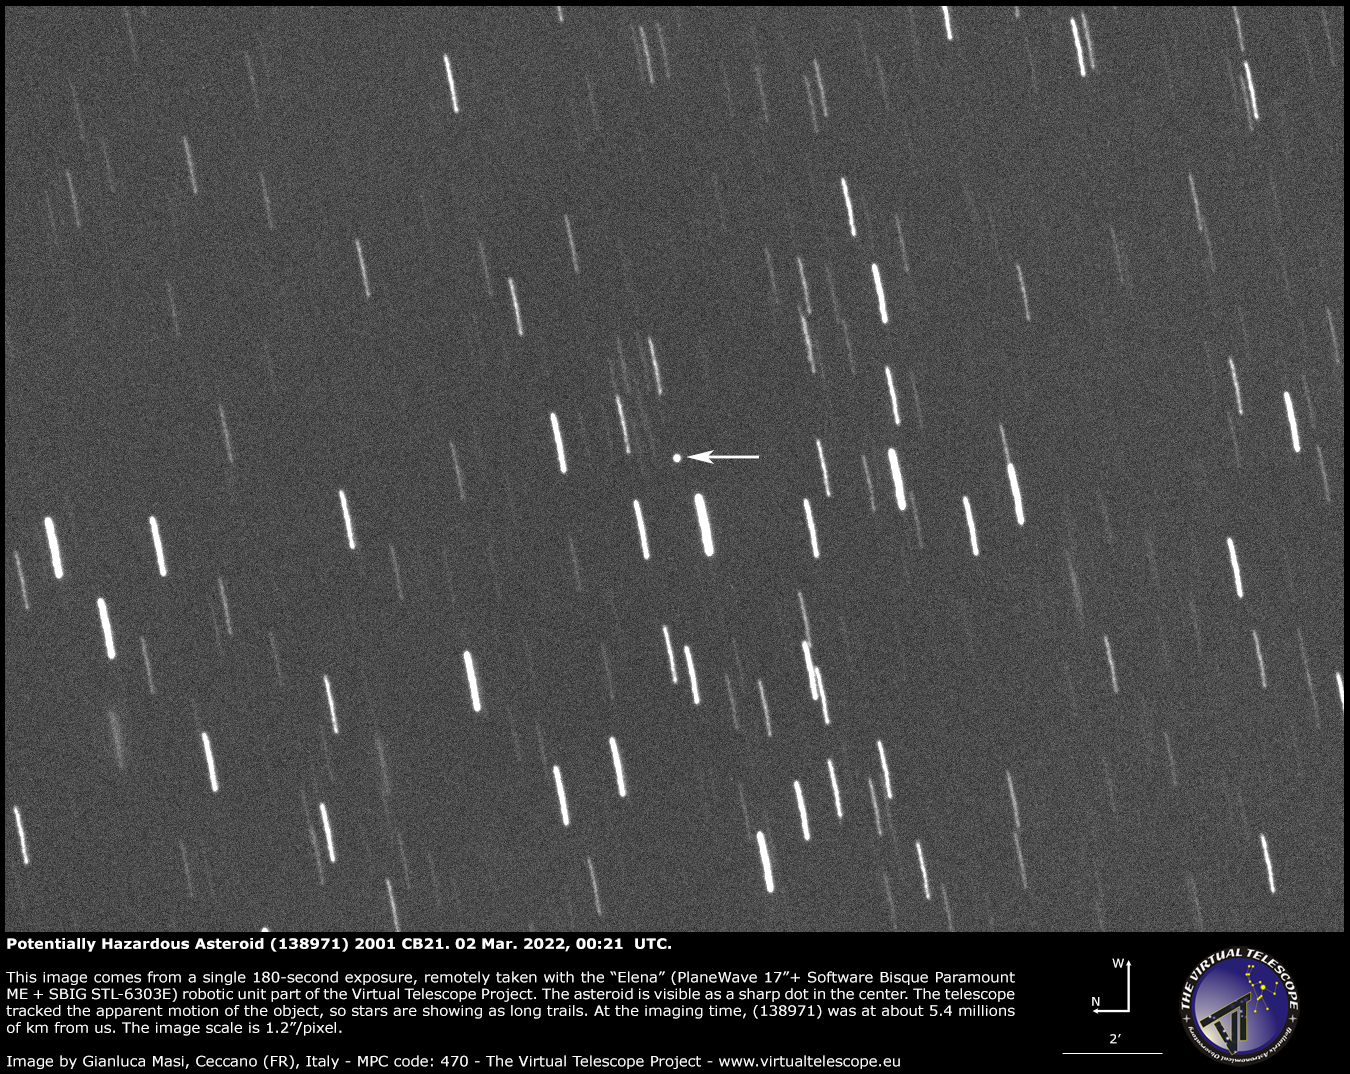 Potentially Hazardous Asteroid (138971) 2001 CB21: 2 Mar. 2022.